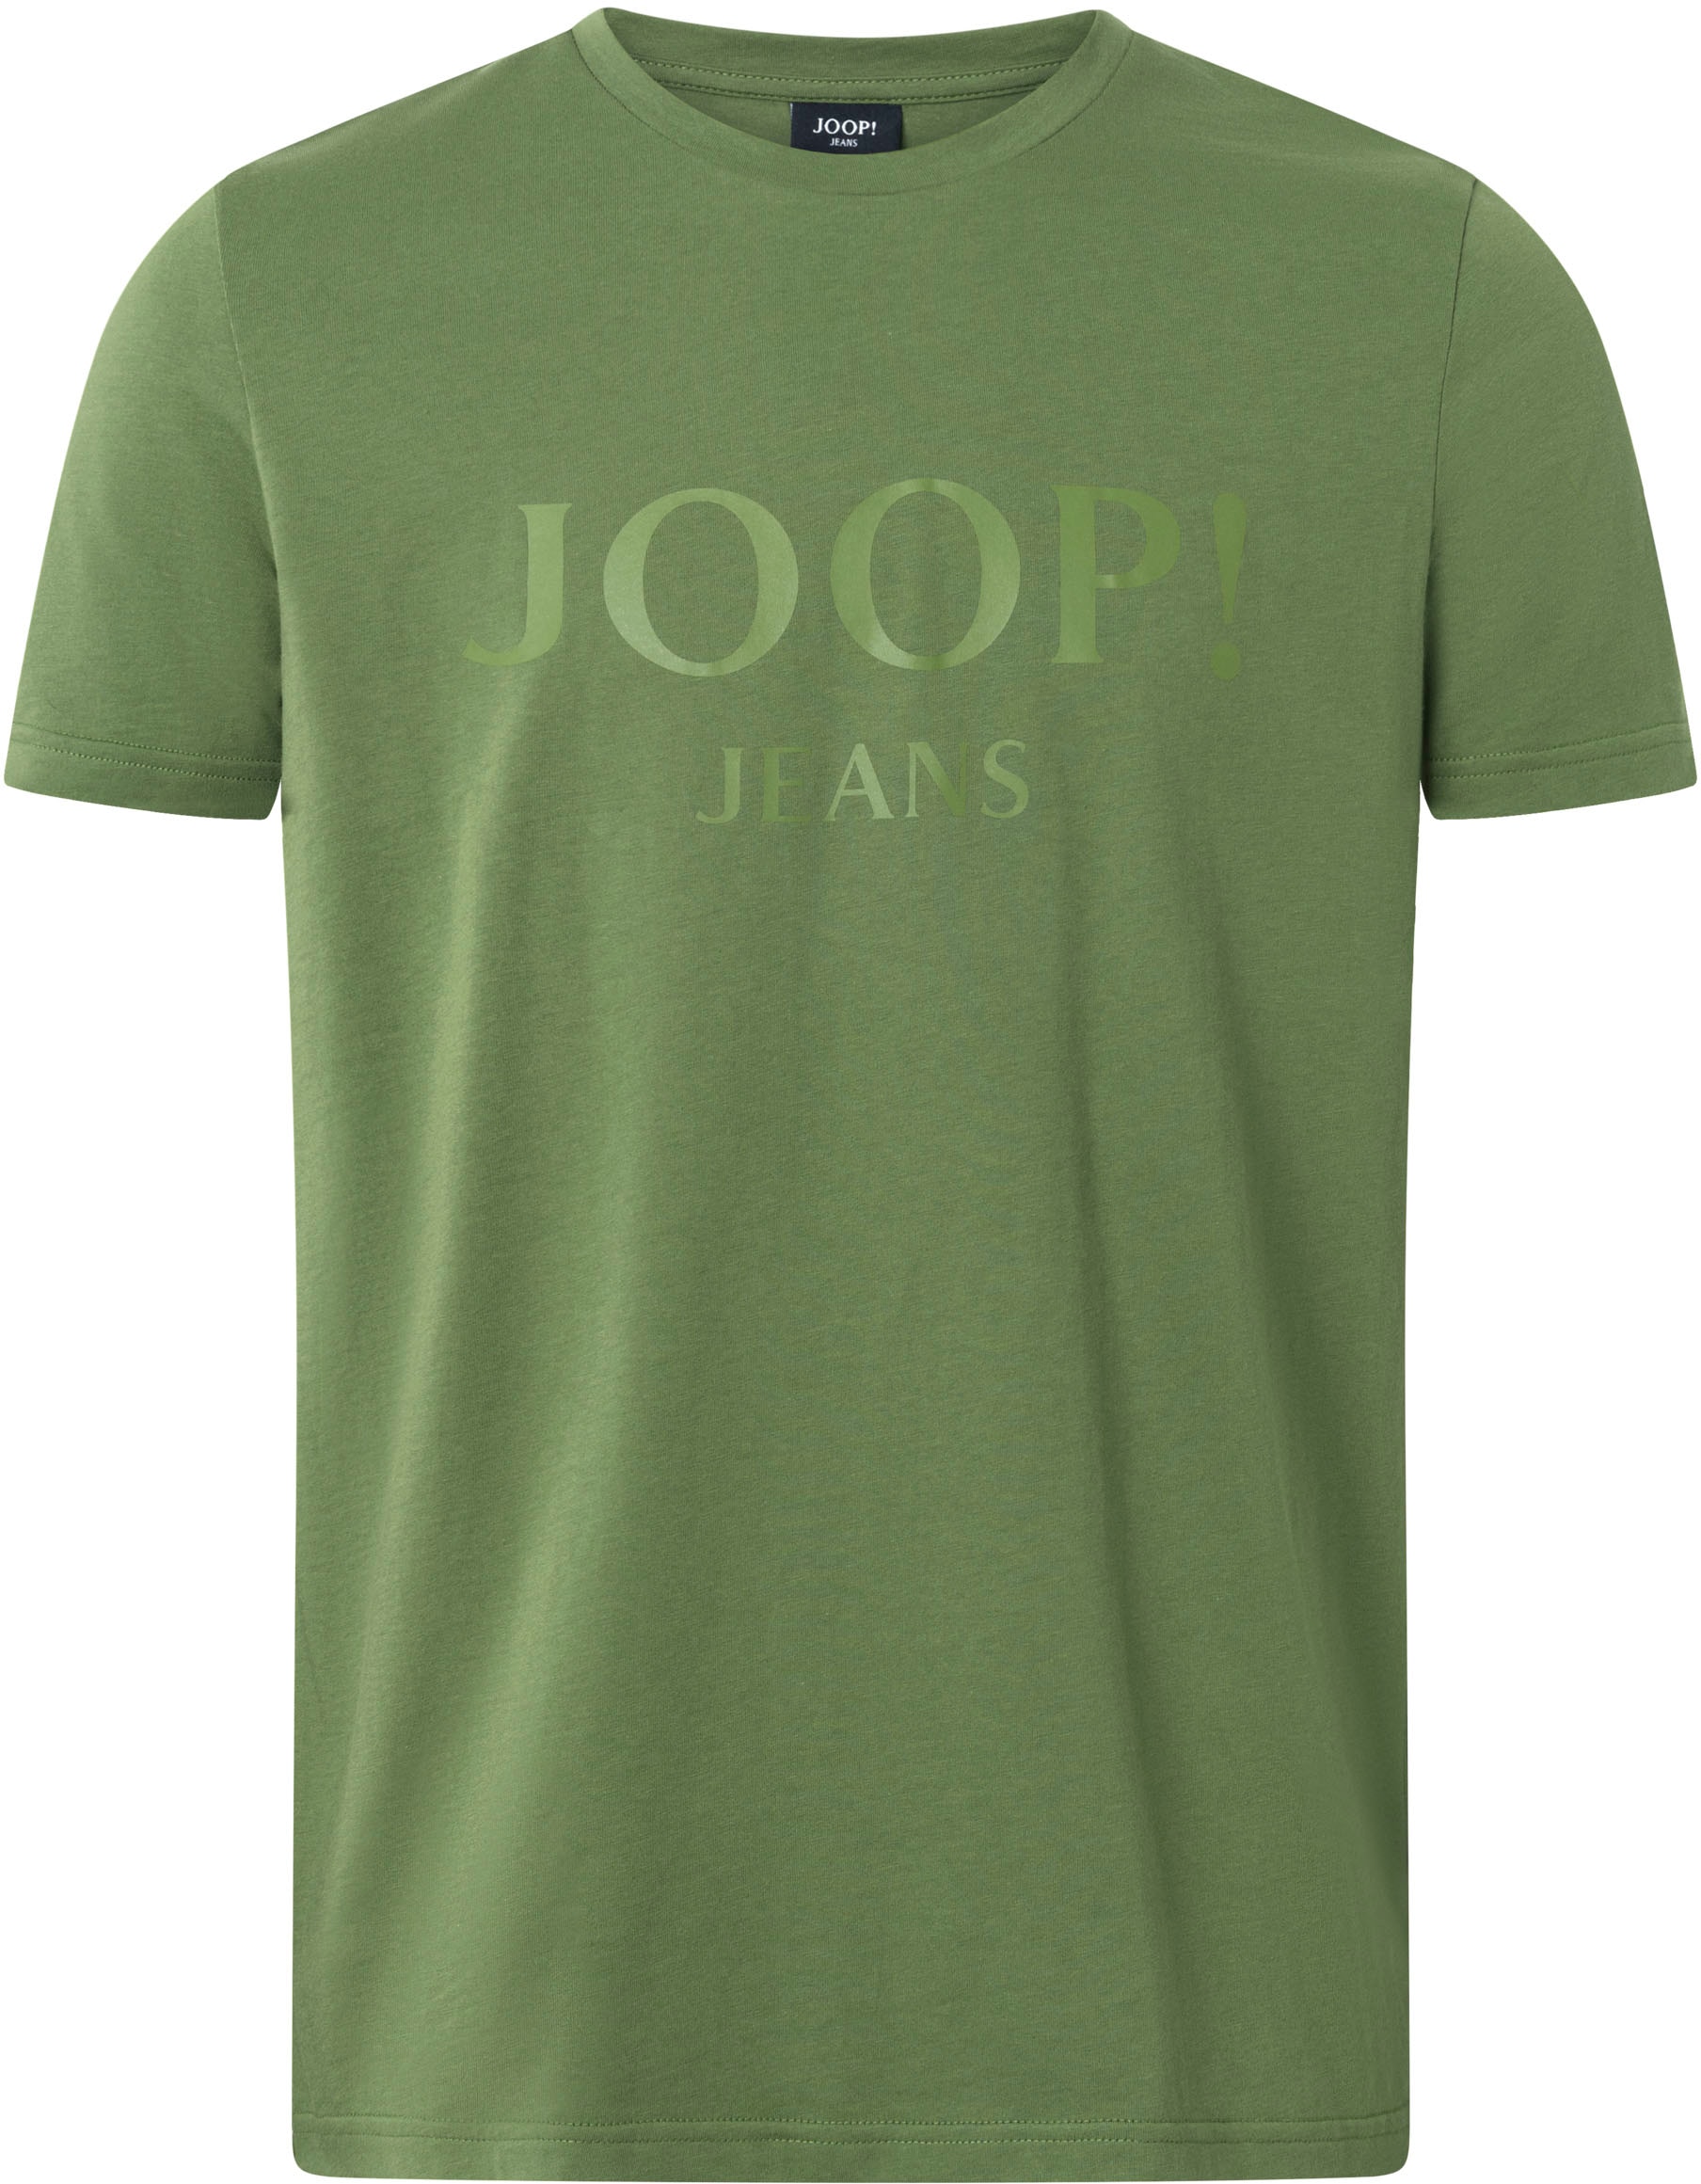 Joop Jeans Rundhalsshirt »JJJ-09Alex« von Joop Jeans